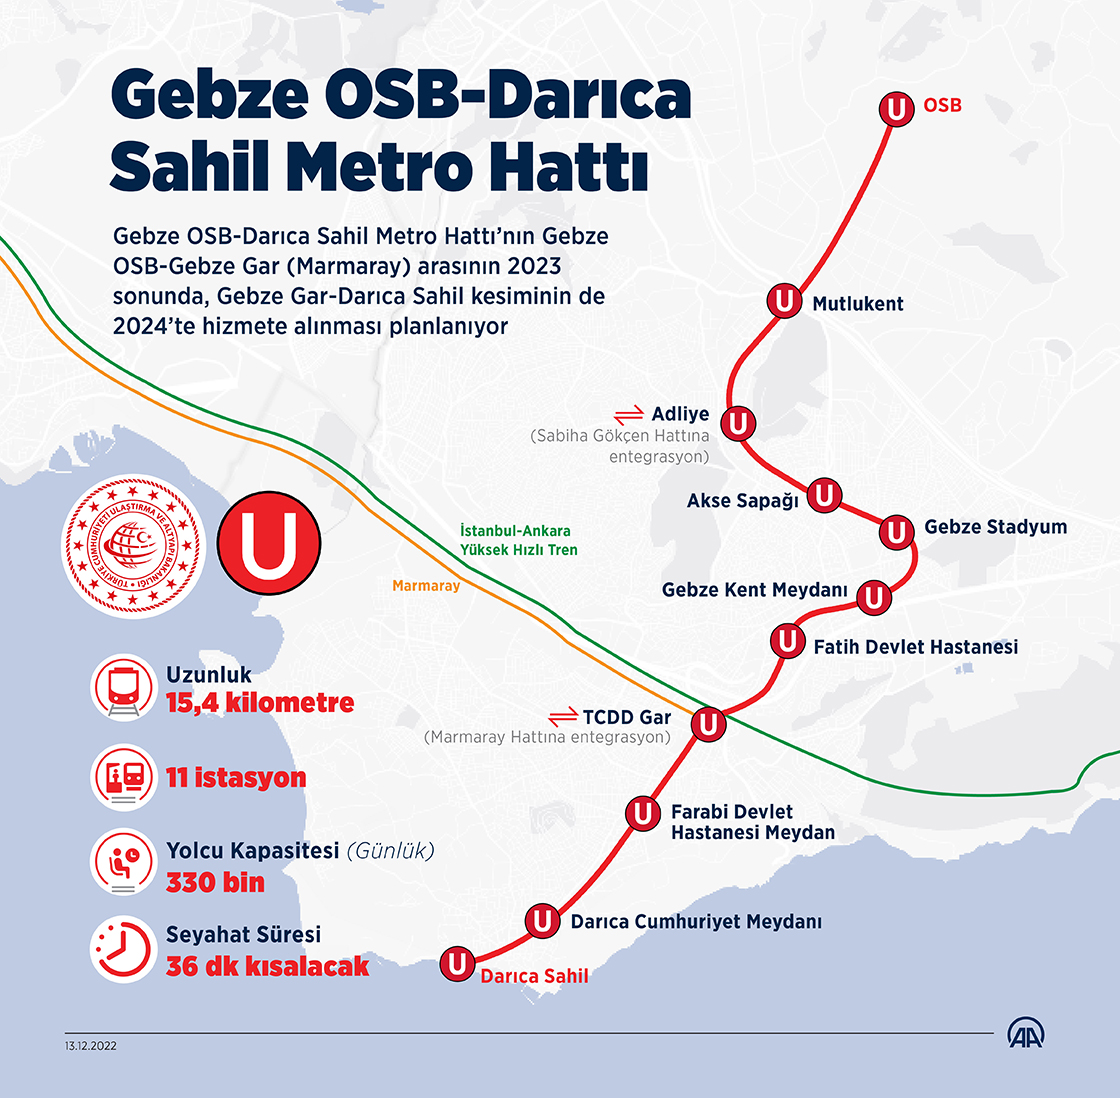 Gebze OSB-Darıca Sahil Metro Hattı